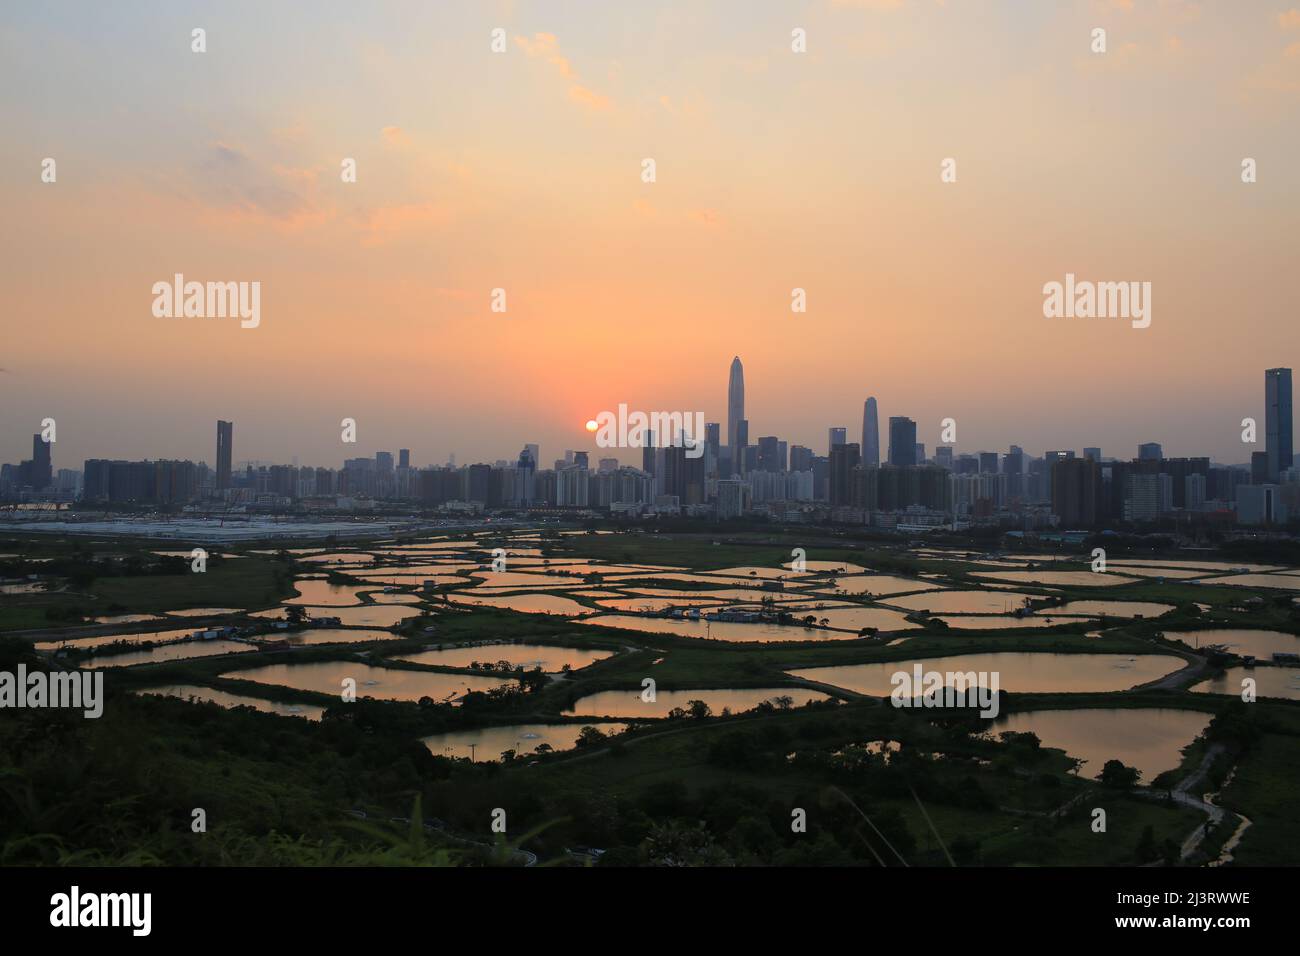 Skyline di Shenzhen , con grattacieli e uffici contro la fattoria di pesce o stagni di pesce, durante il momento drammatico in serata, dalla vista del confine di Hong K. Foto Stock